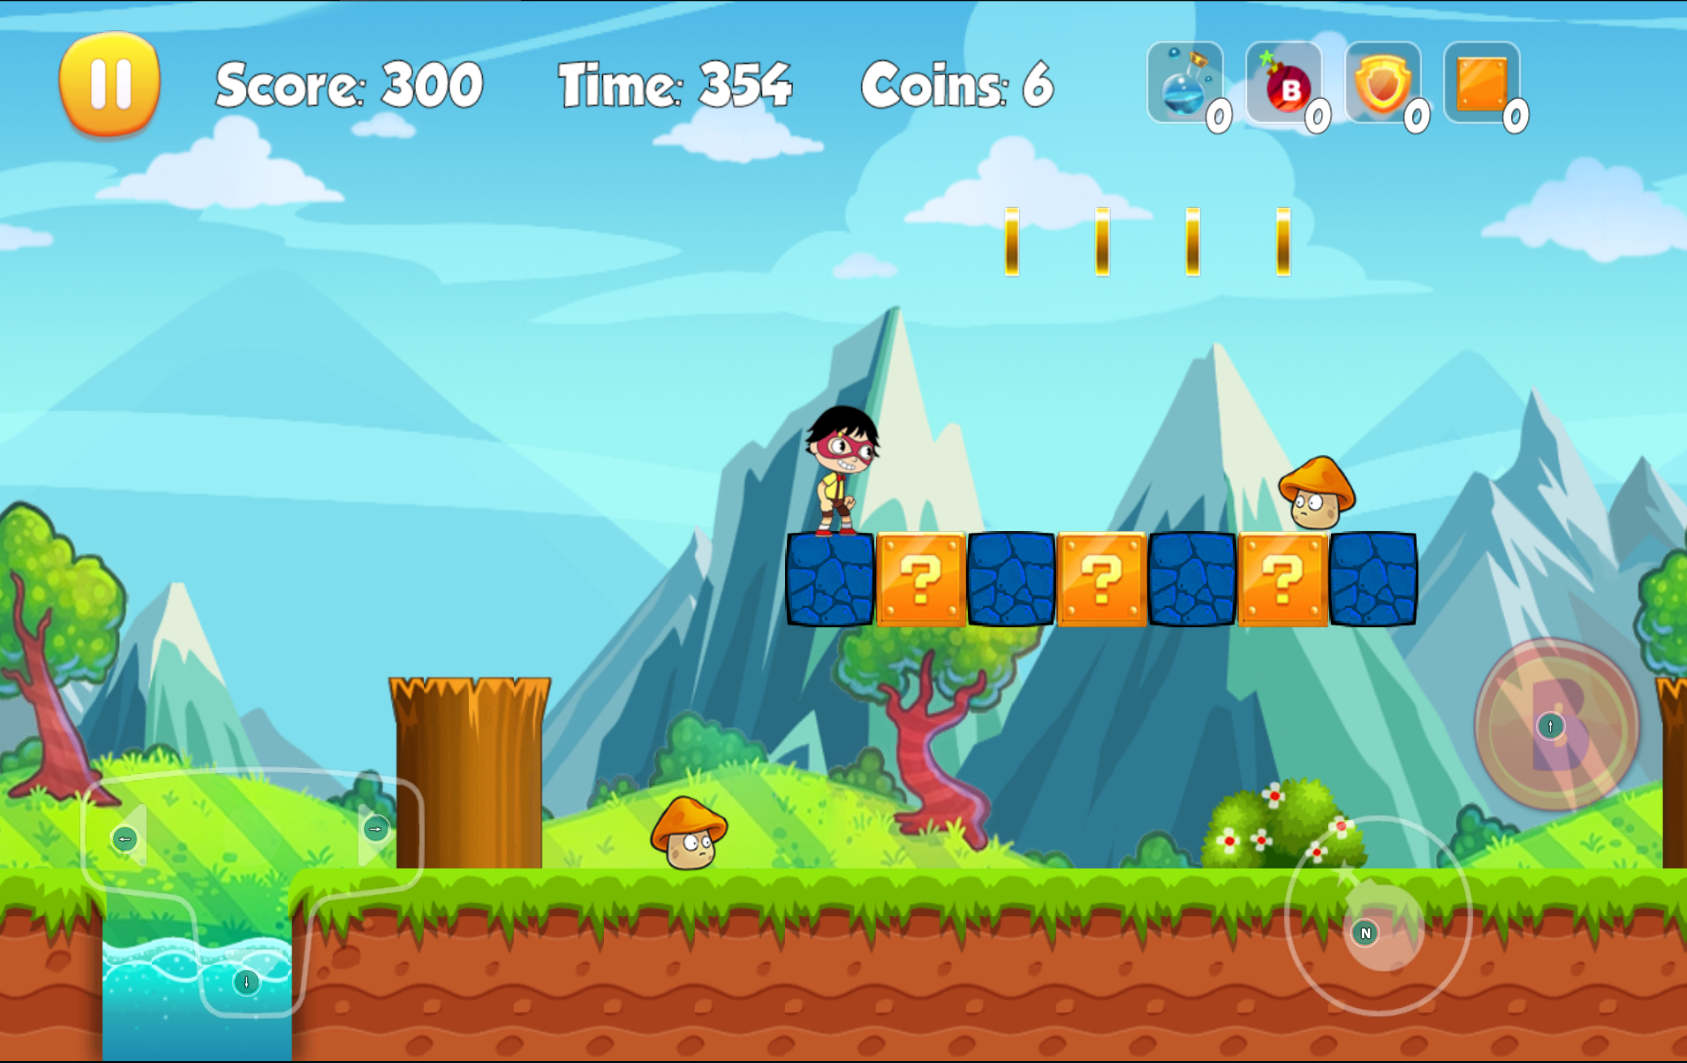 Screenshot 1 of Ryan Toy Run Game Untuk Anak-Anak (BARU) 1.0.2